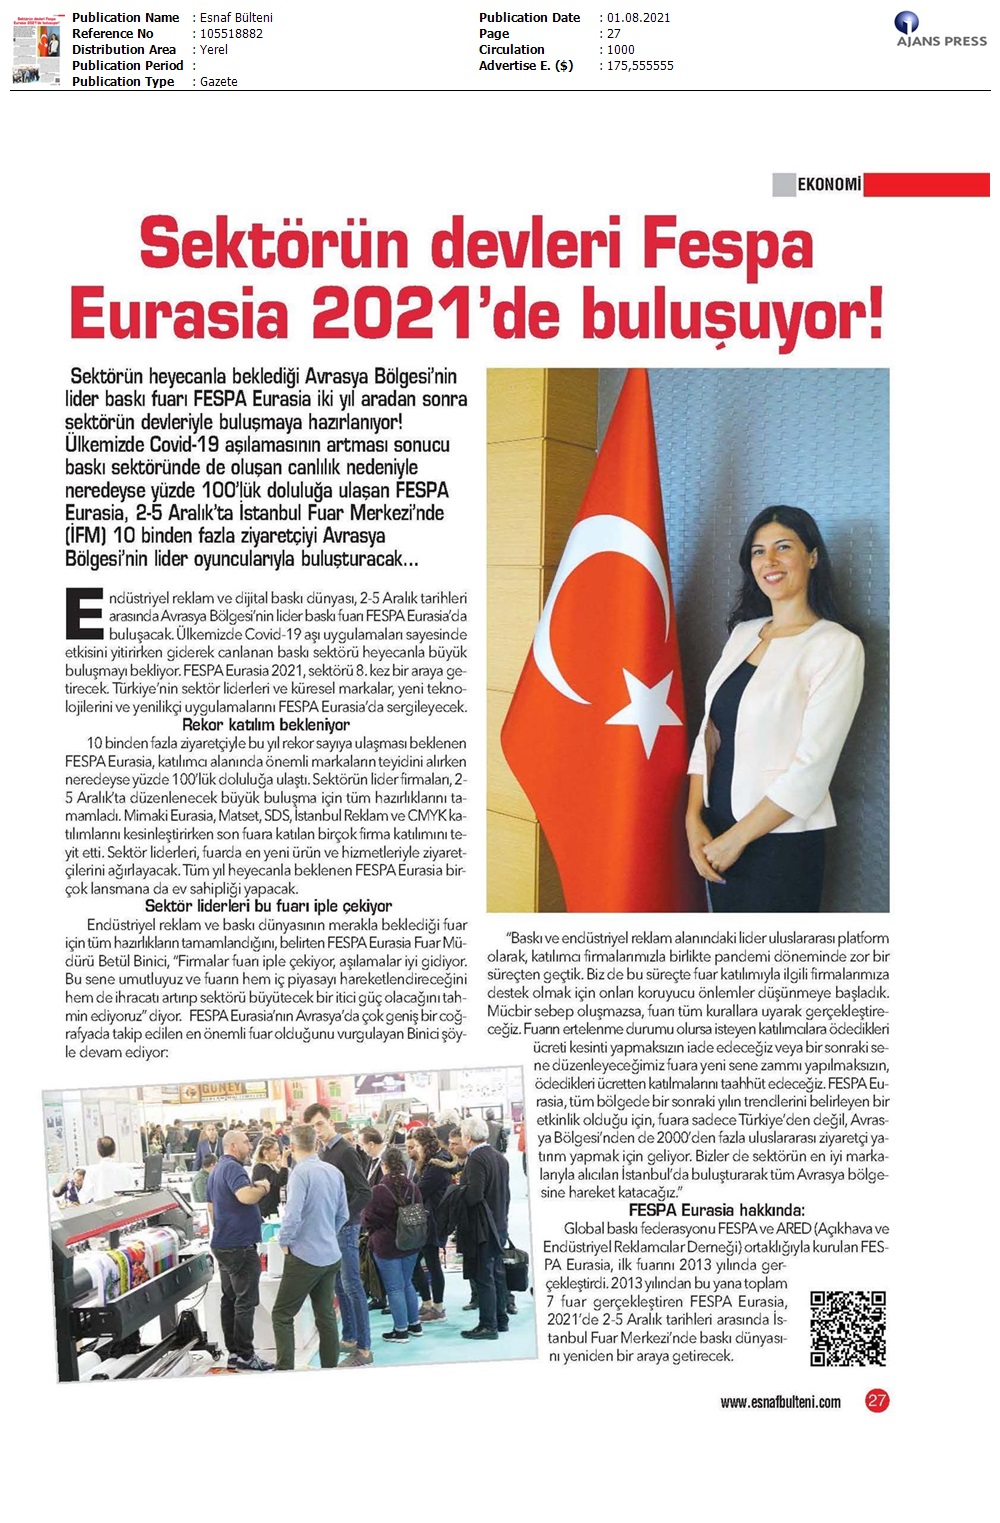 Sektörün devleri FESPA Eurasia 2021'de buluşuyor!